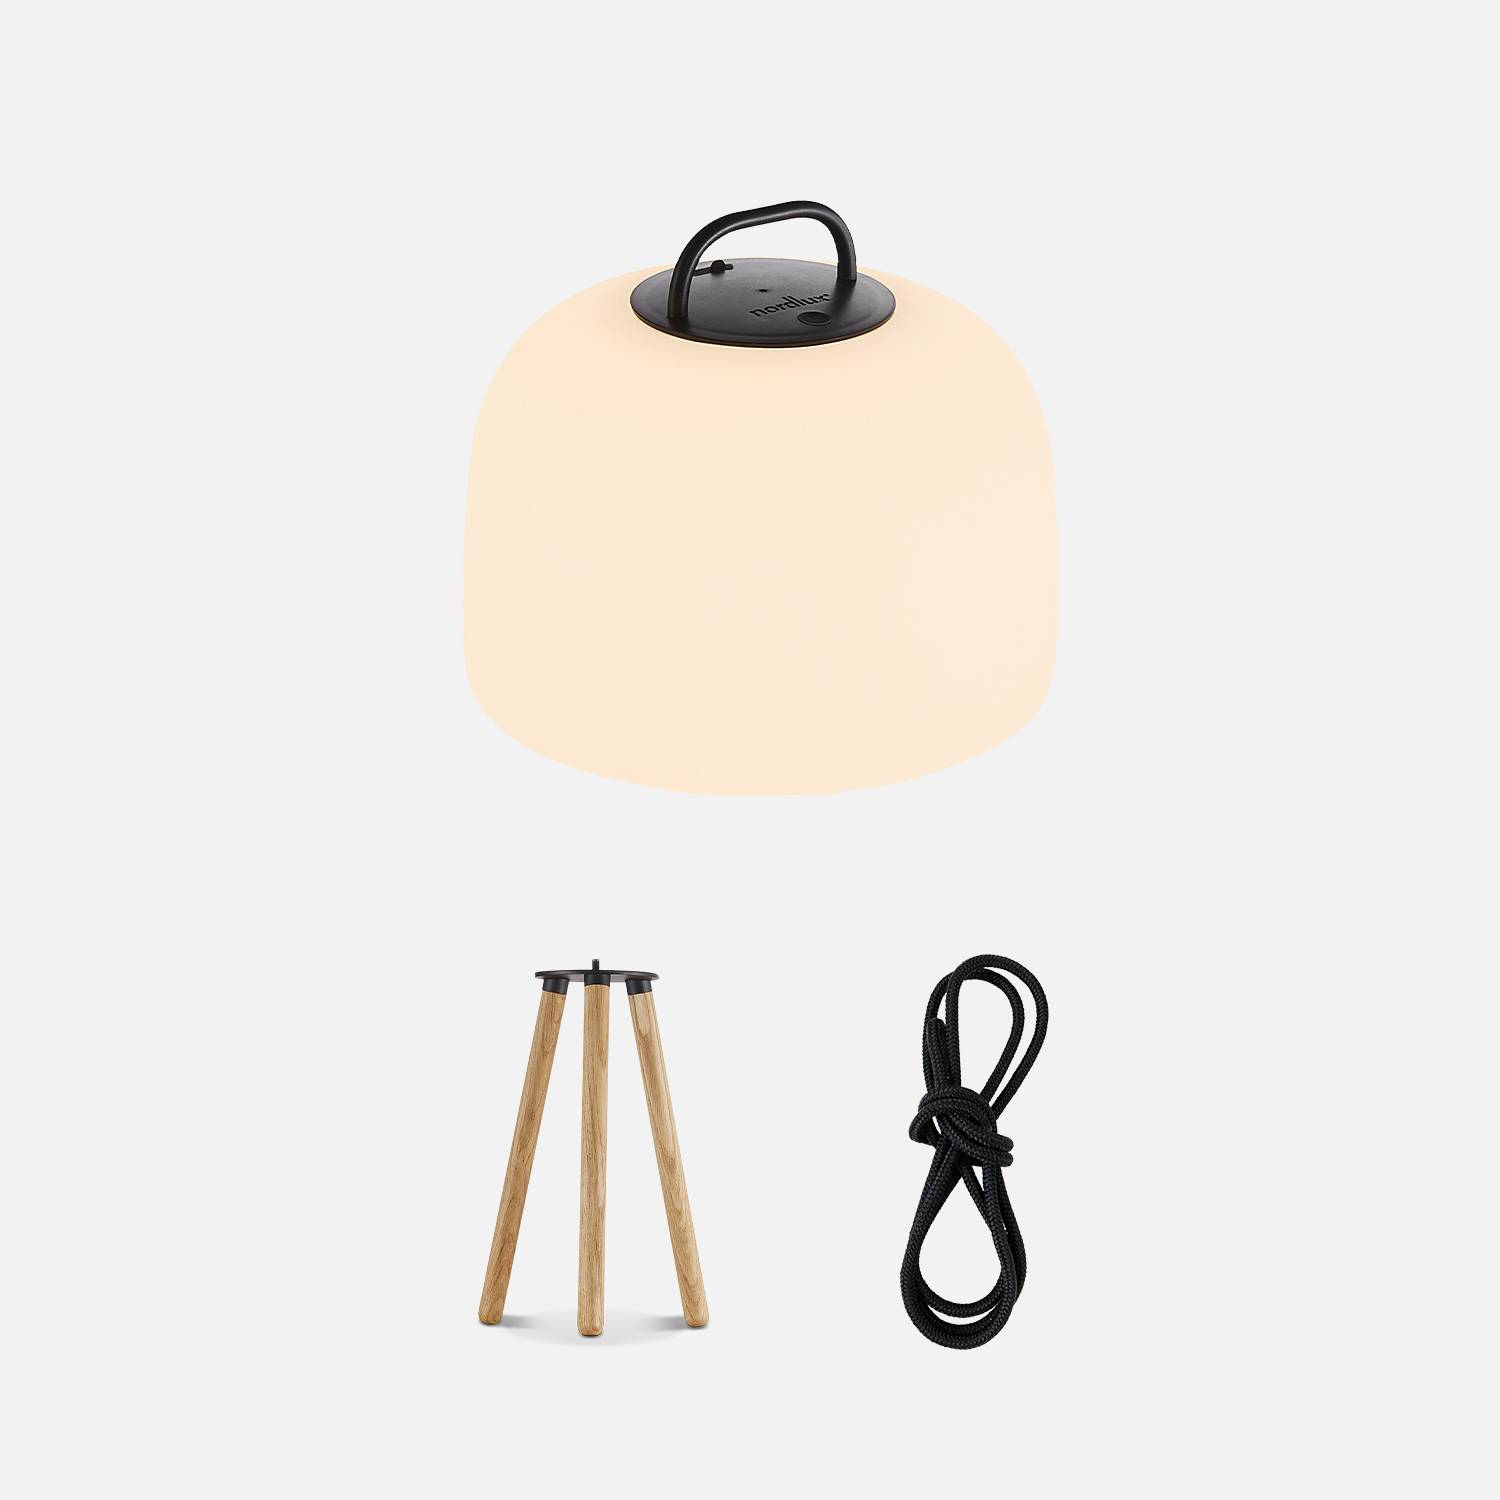 Lampe intérieure LED 3 en 1 – TRIPADA L – lampe en plastique avec pieds en bois d'Hévéa, Ø22cm rechargeable, à suspendre, avec trépied 35cm et corde,sweeek,Photo2